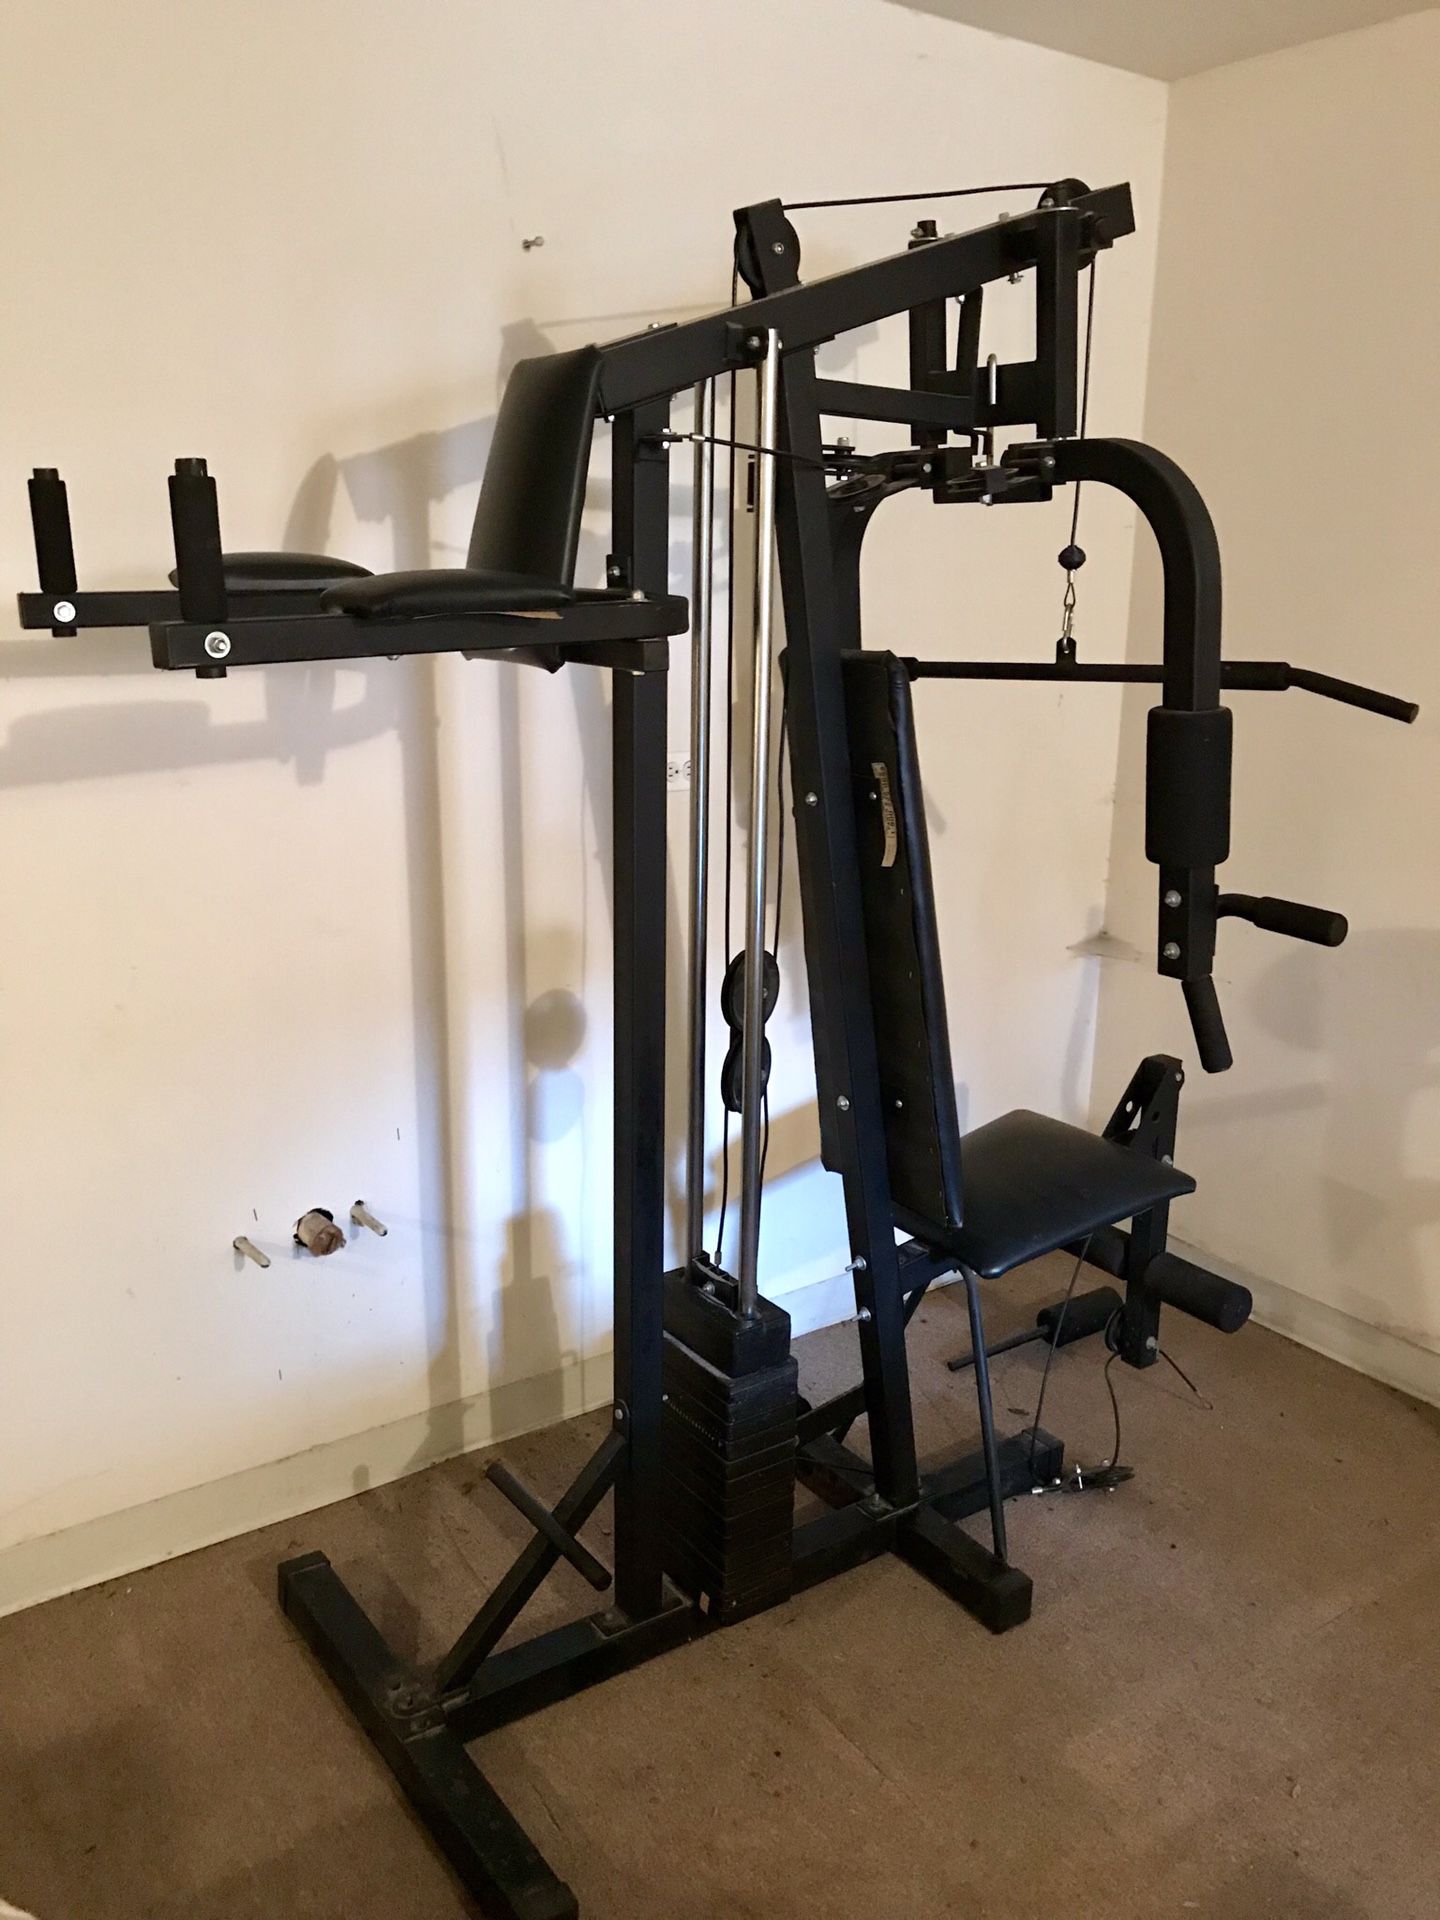 Weiider Pro Home Gym Station Machine